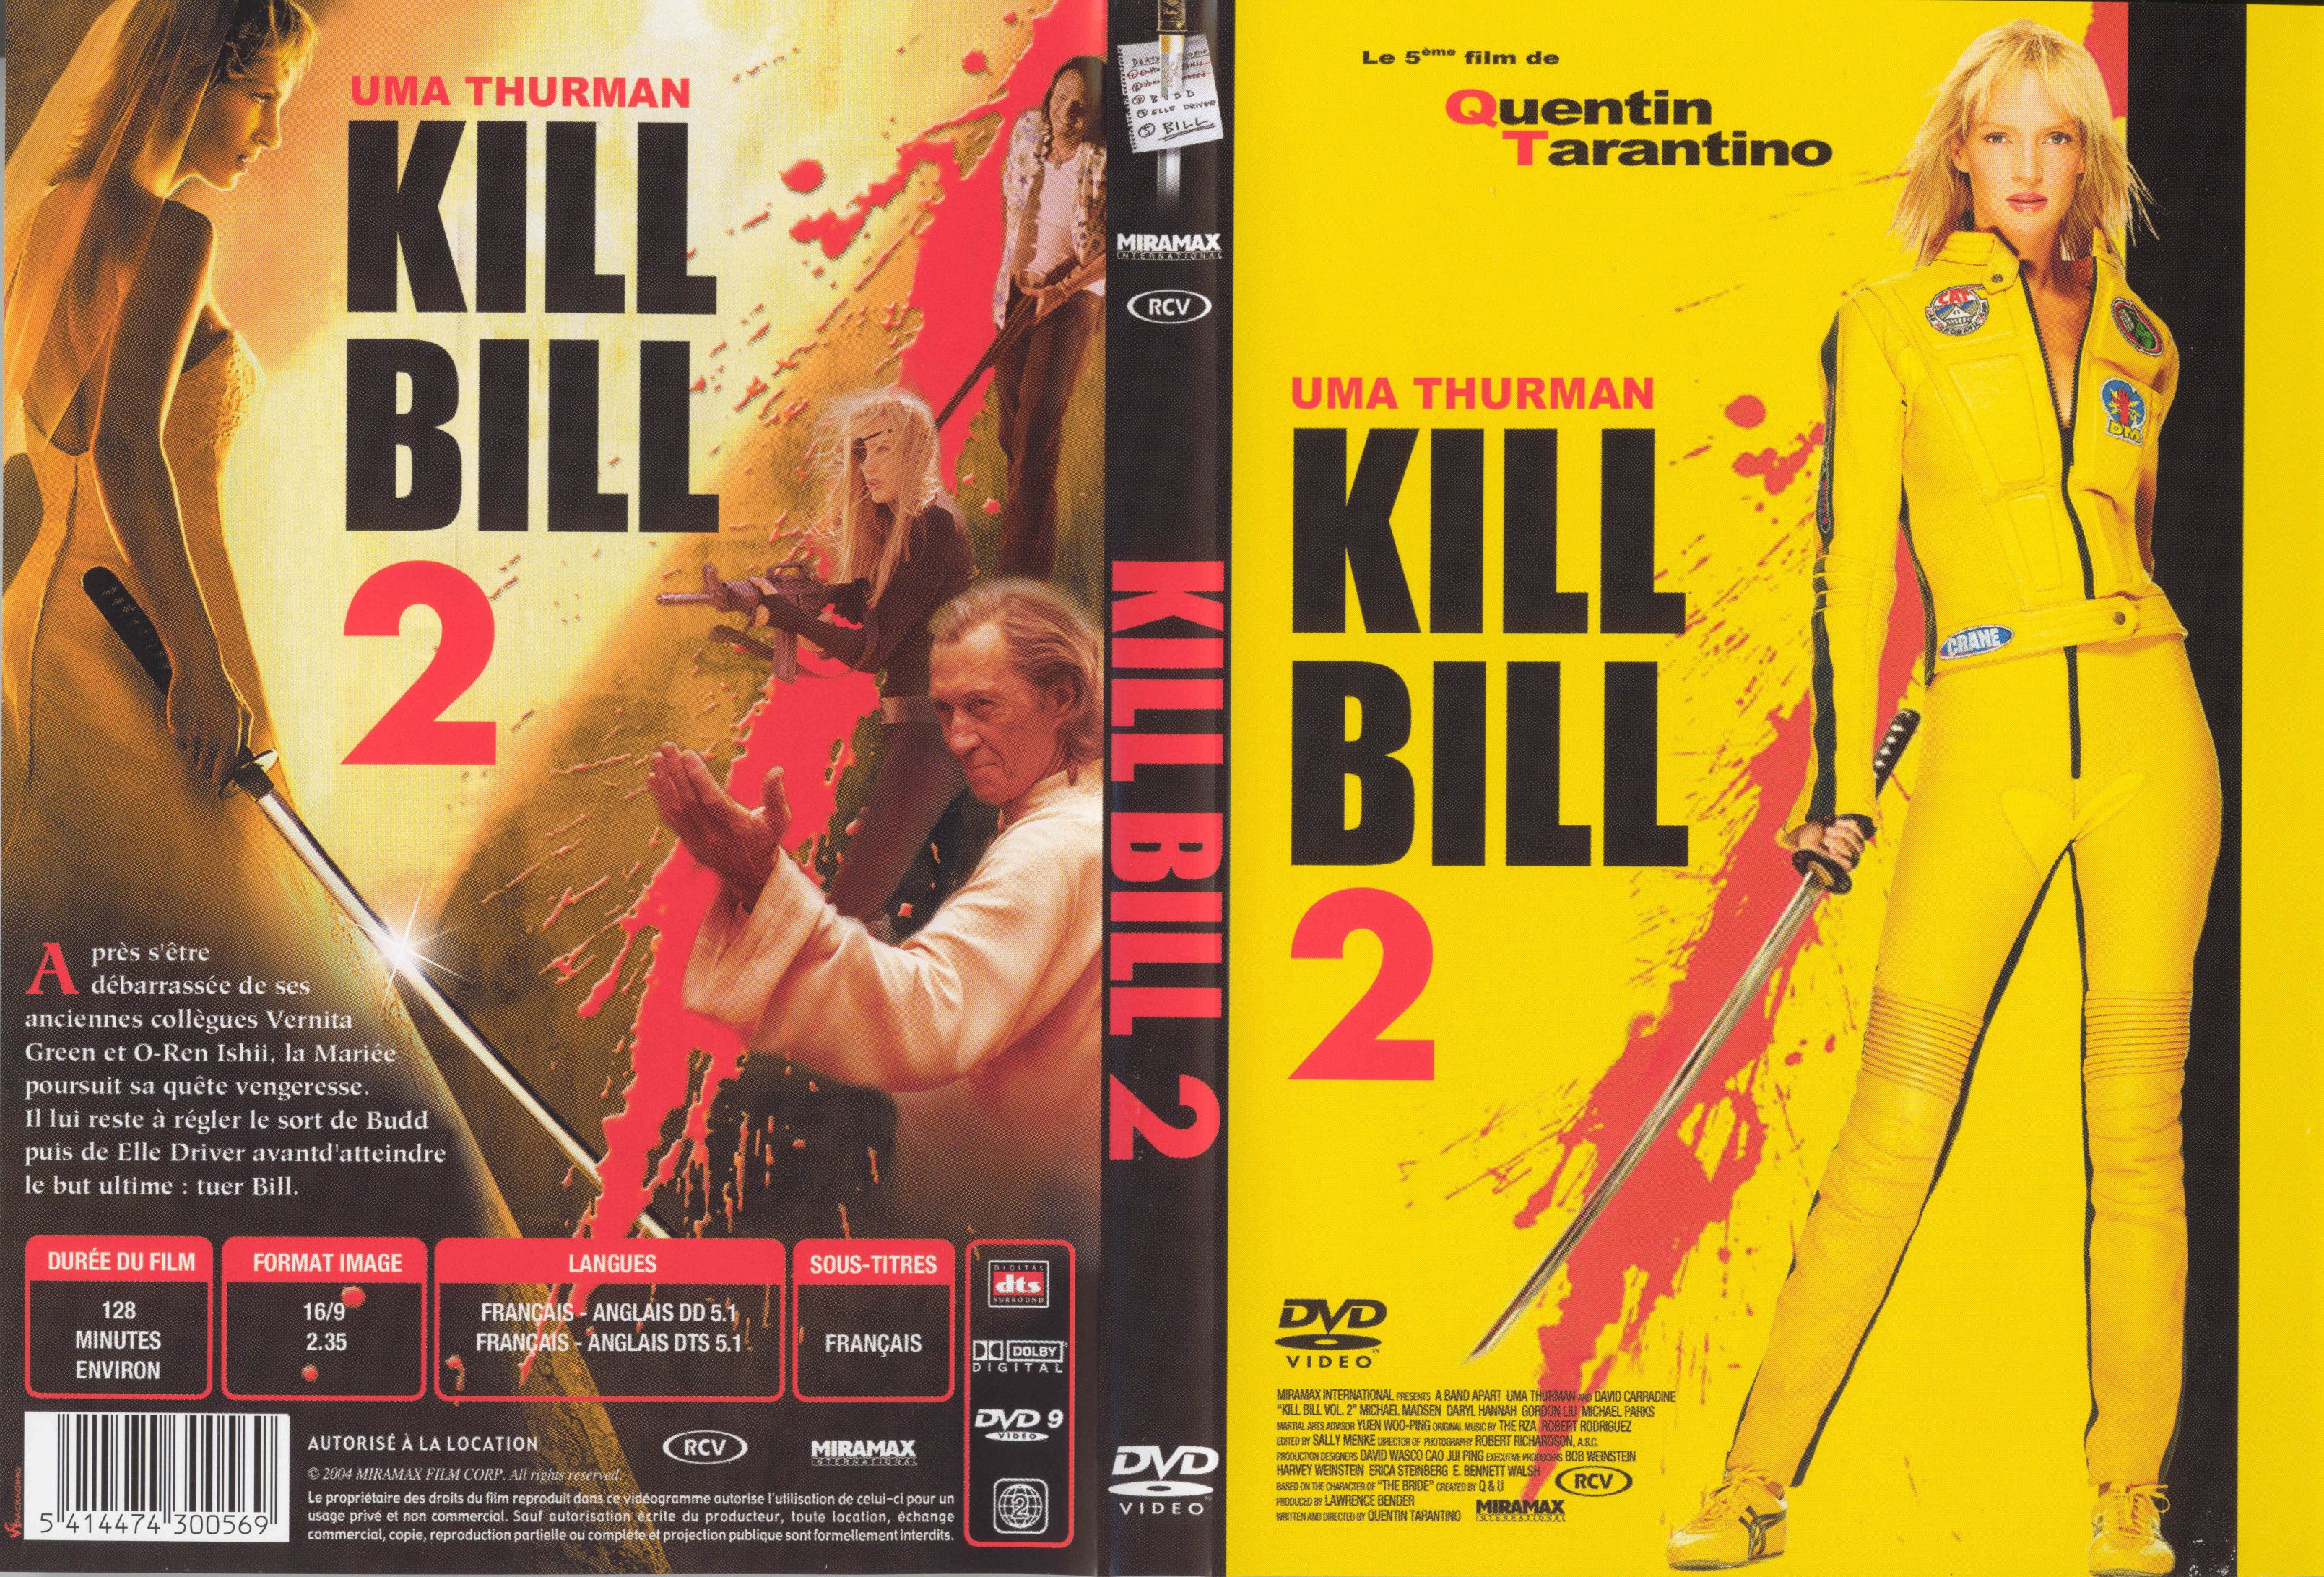 Jaquette DVD Kill bill vol 2 v3